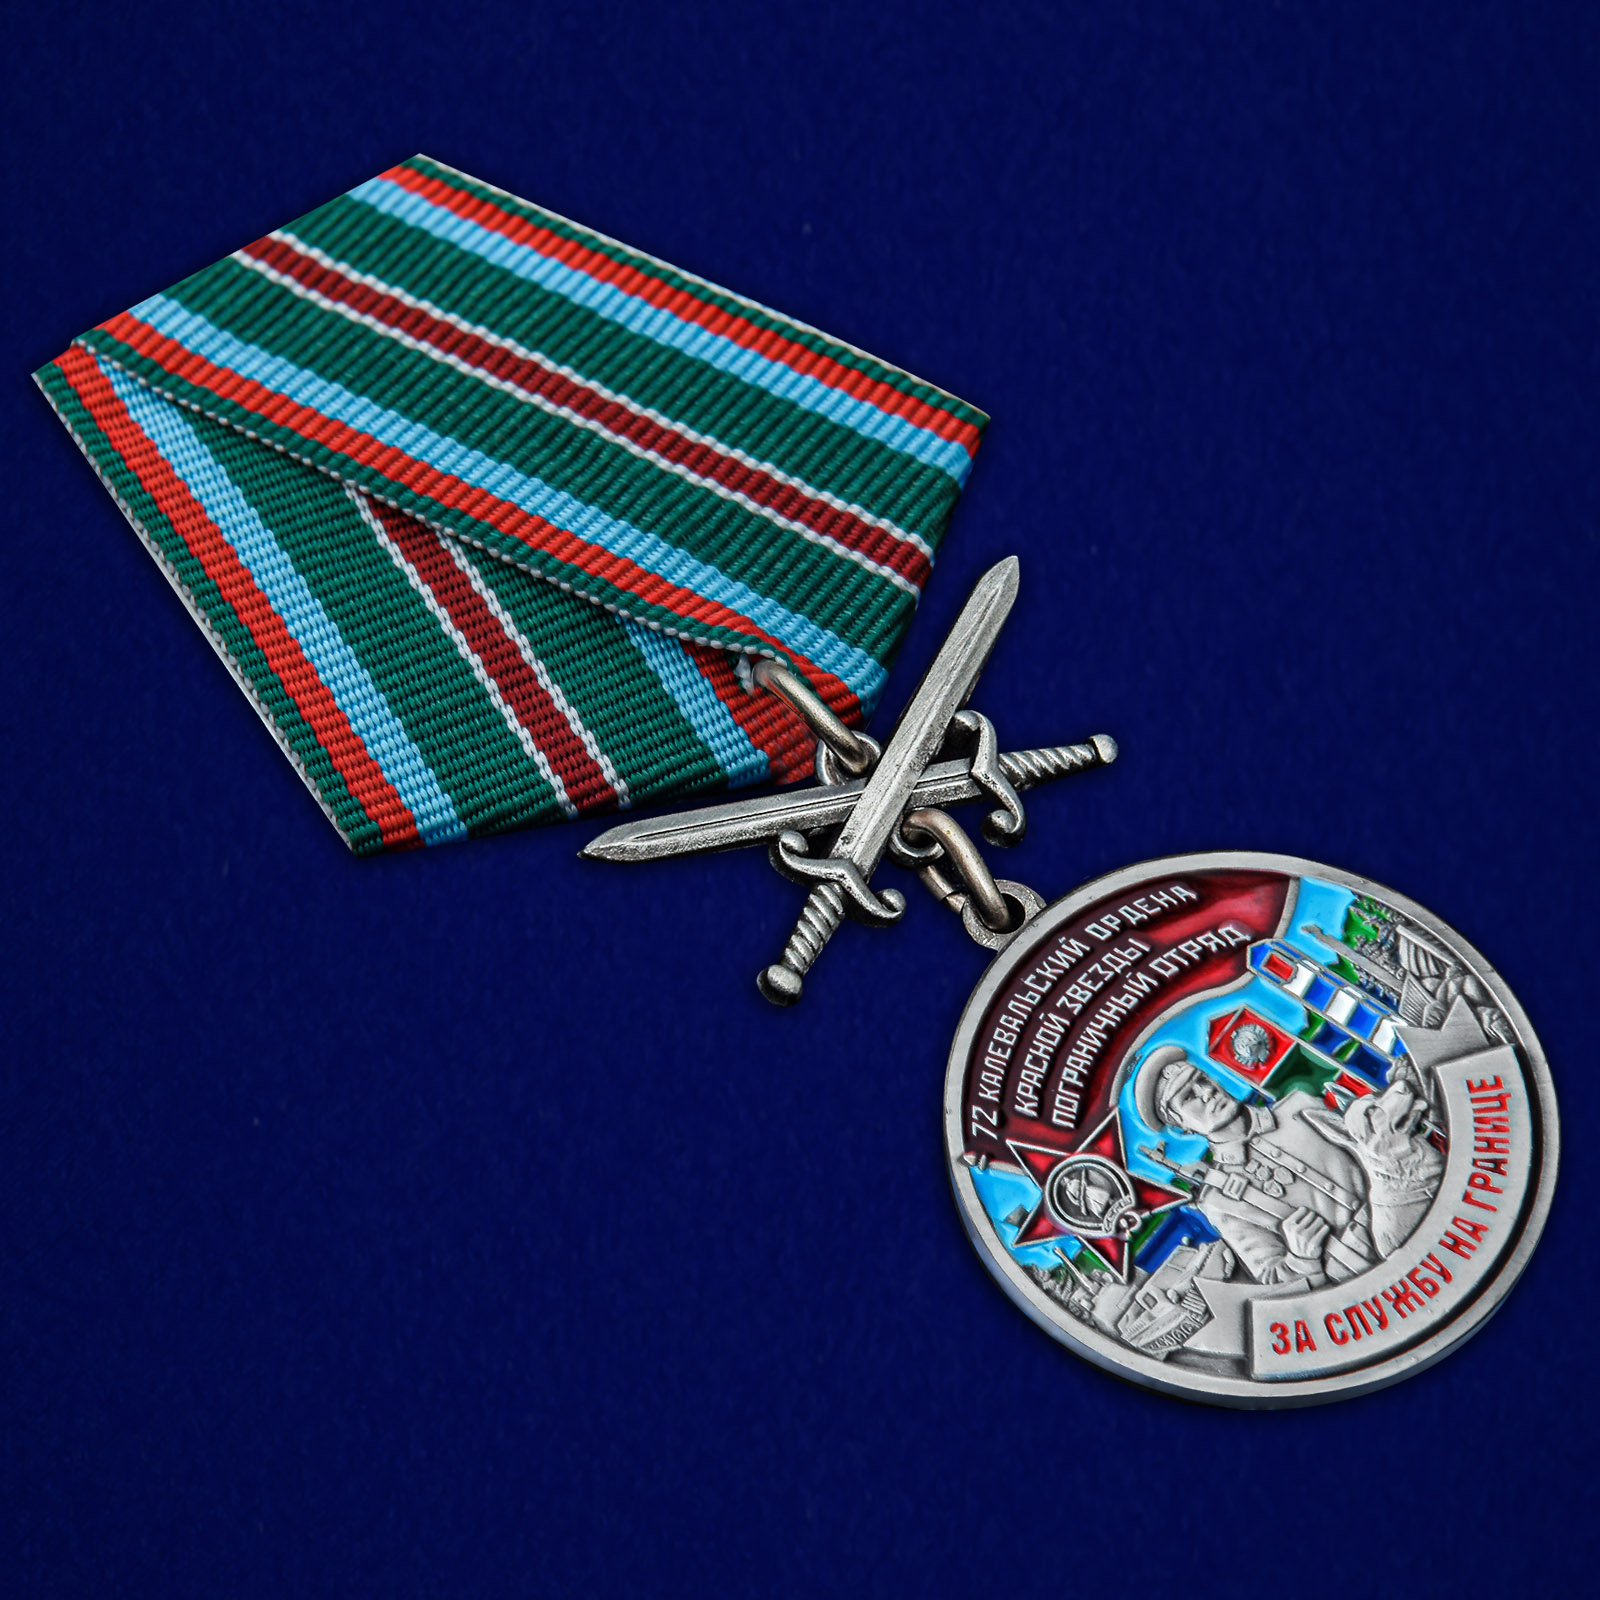 Купить медаль "За службу в Калевальском пограничном отряде"